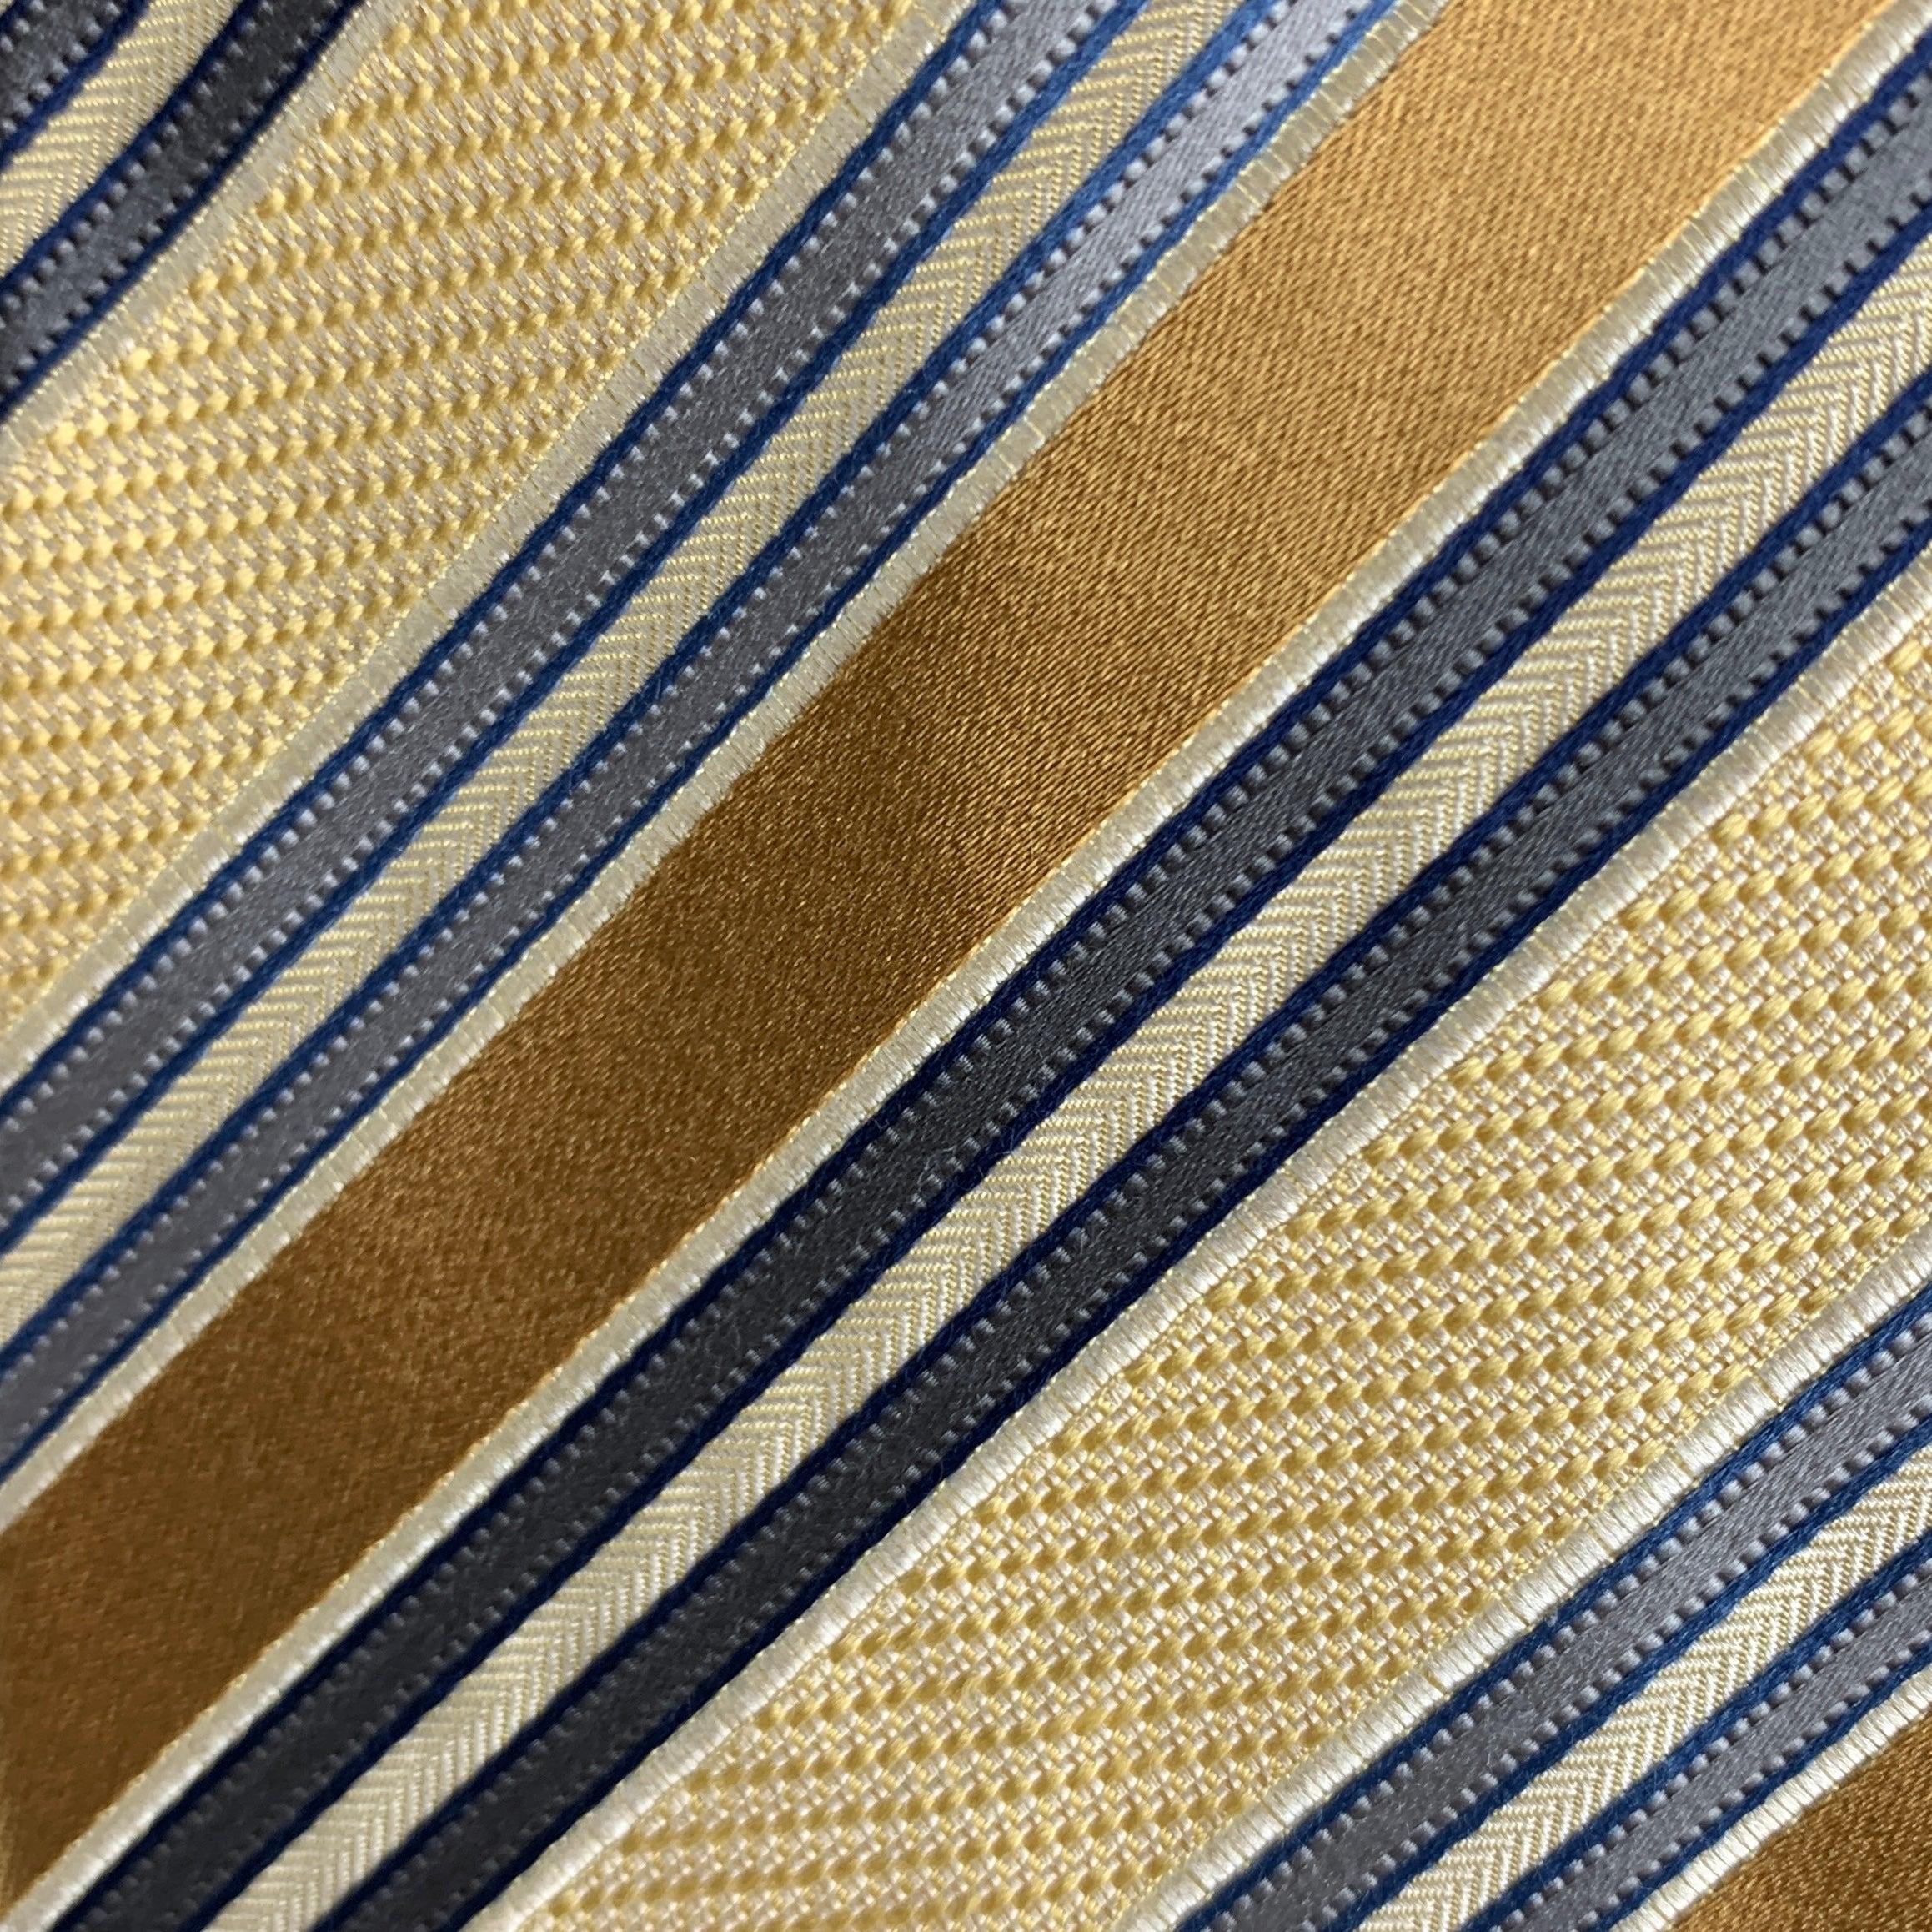 ERMENEGILDO ZEGNA Vintage-Krawatte mit gelben und grauen Diagonalstreifen. 100% Seide. Hergestellt in Italien.
Sehr guter gebrauchter Zustand.
 

Abmessungen: 
  Breite: 3 Zoll Länge: 58 Zoll 




  
  
 
Sui Generis-Referenz: 124760
Kategorie: